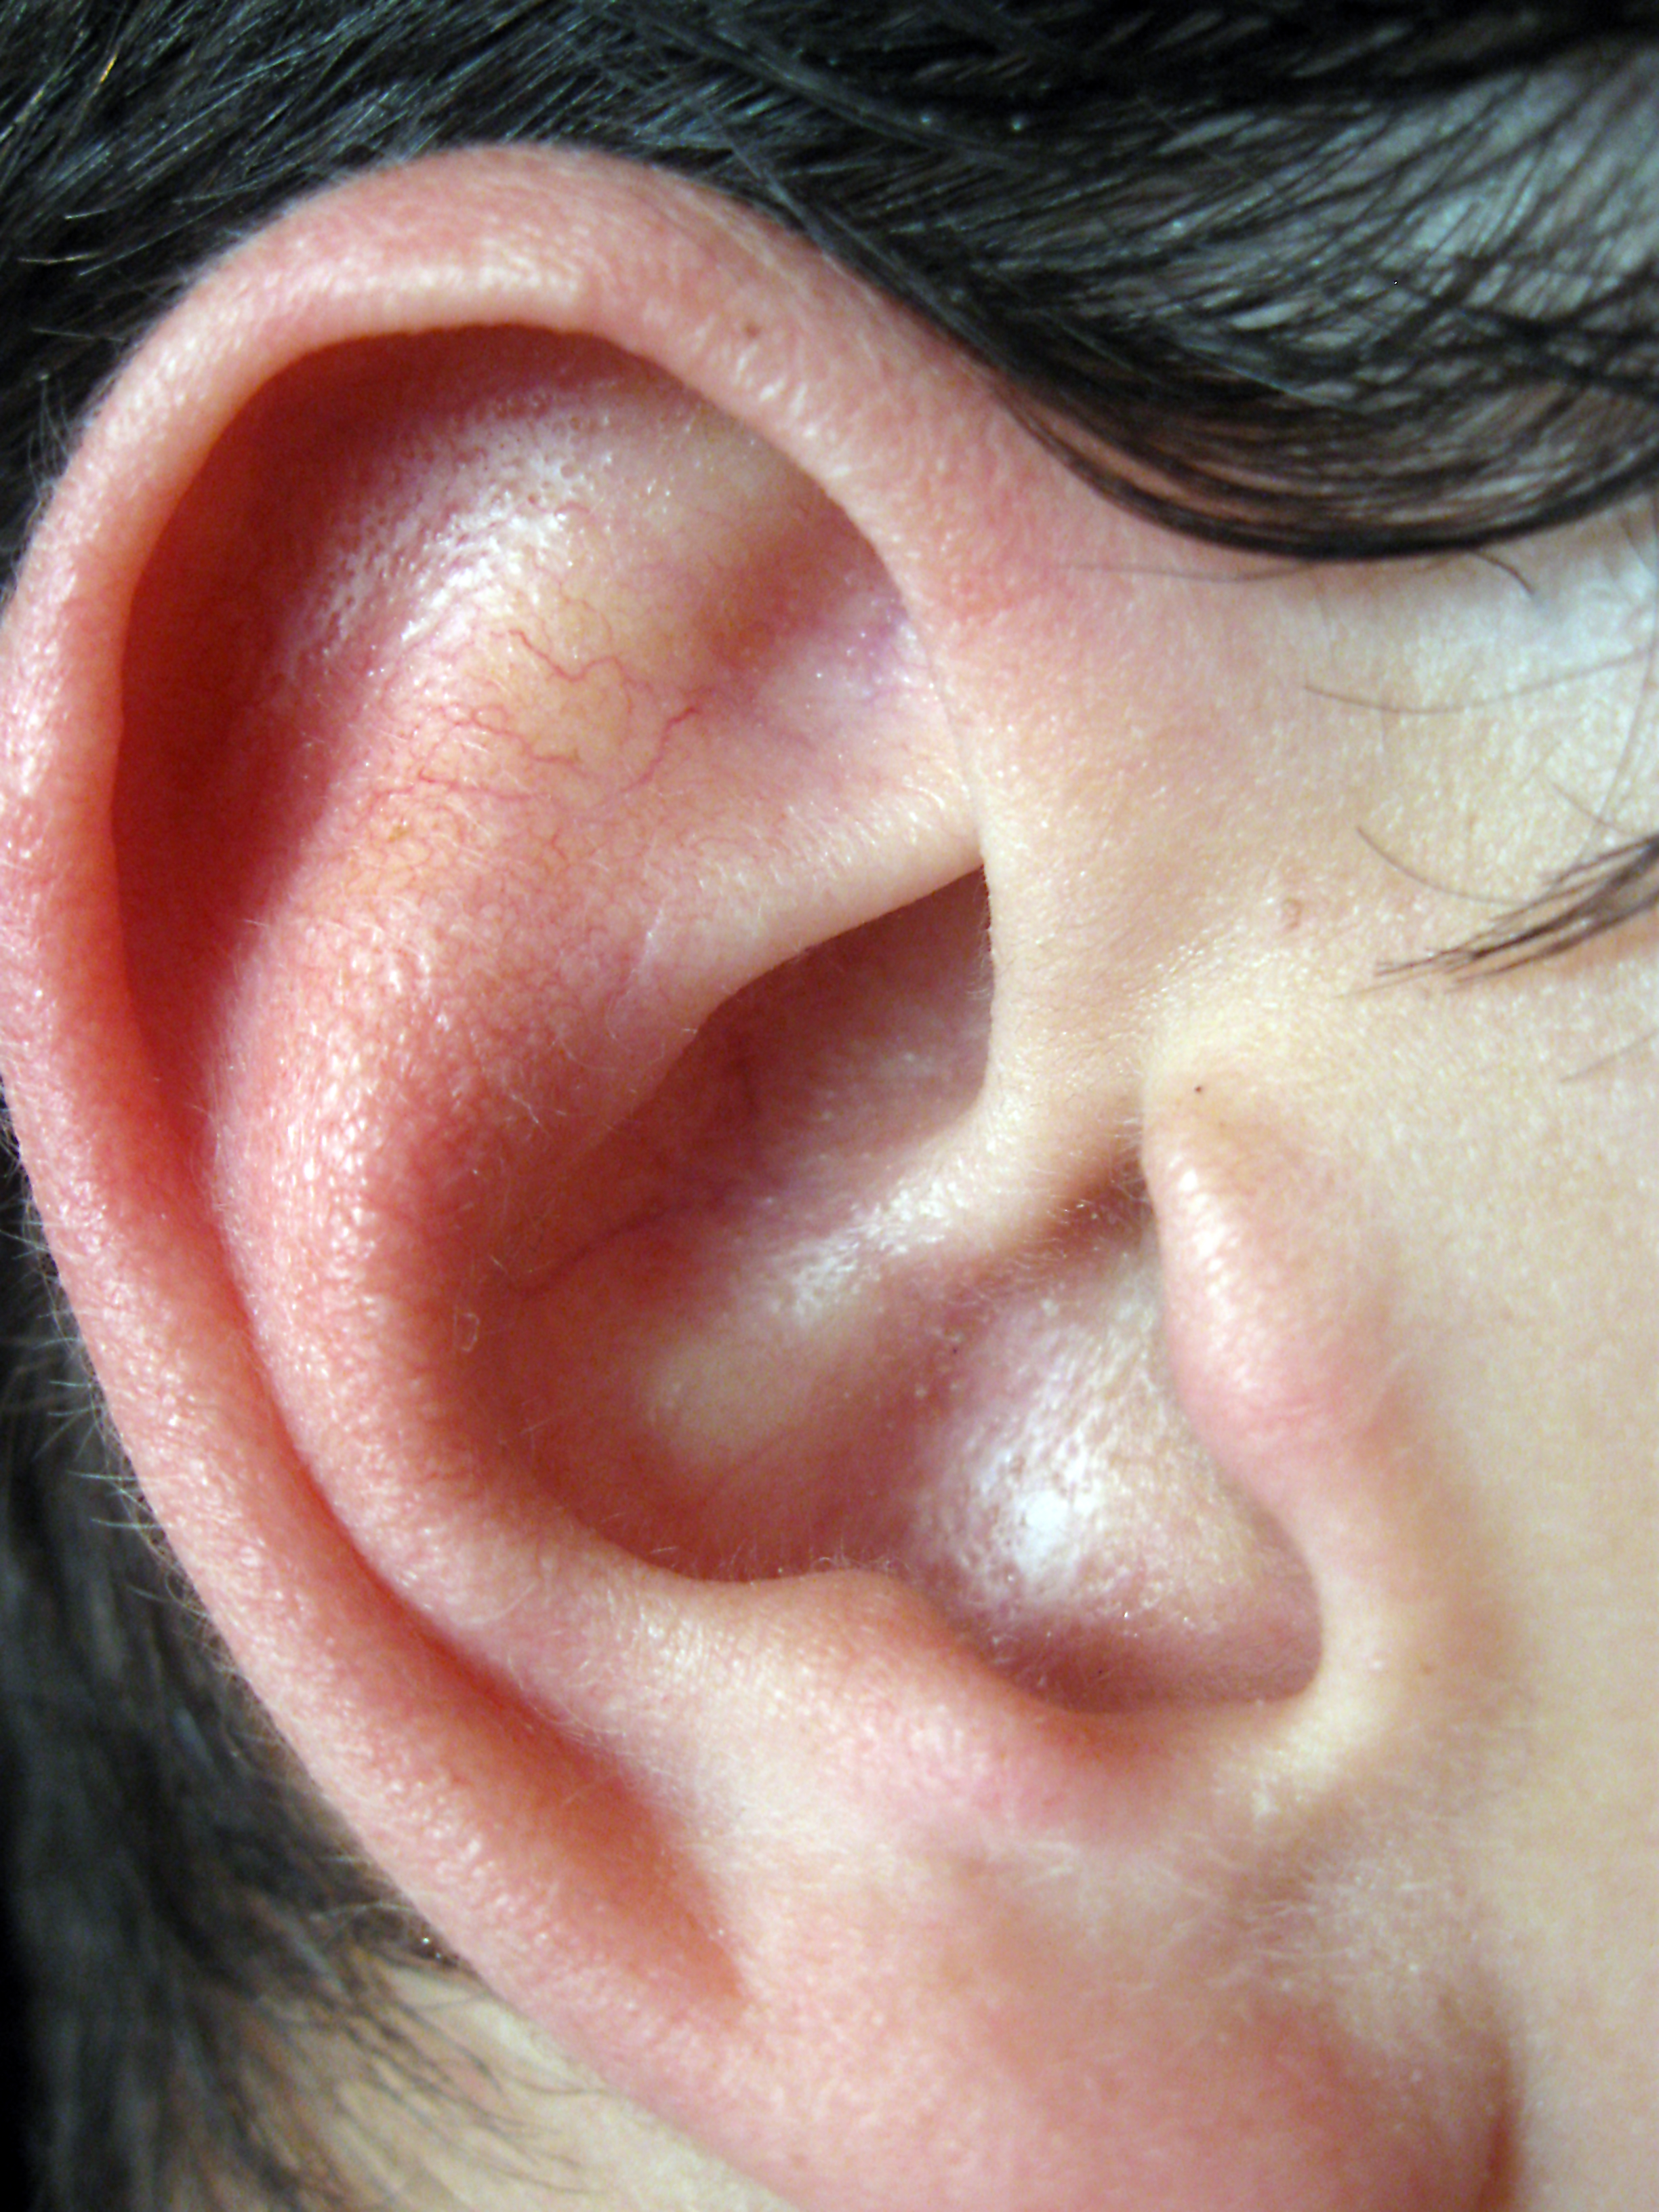 Показать картинку уха. Отопластика (1 ушная раковина).